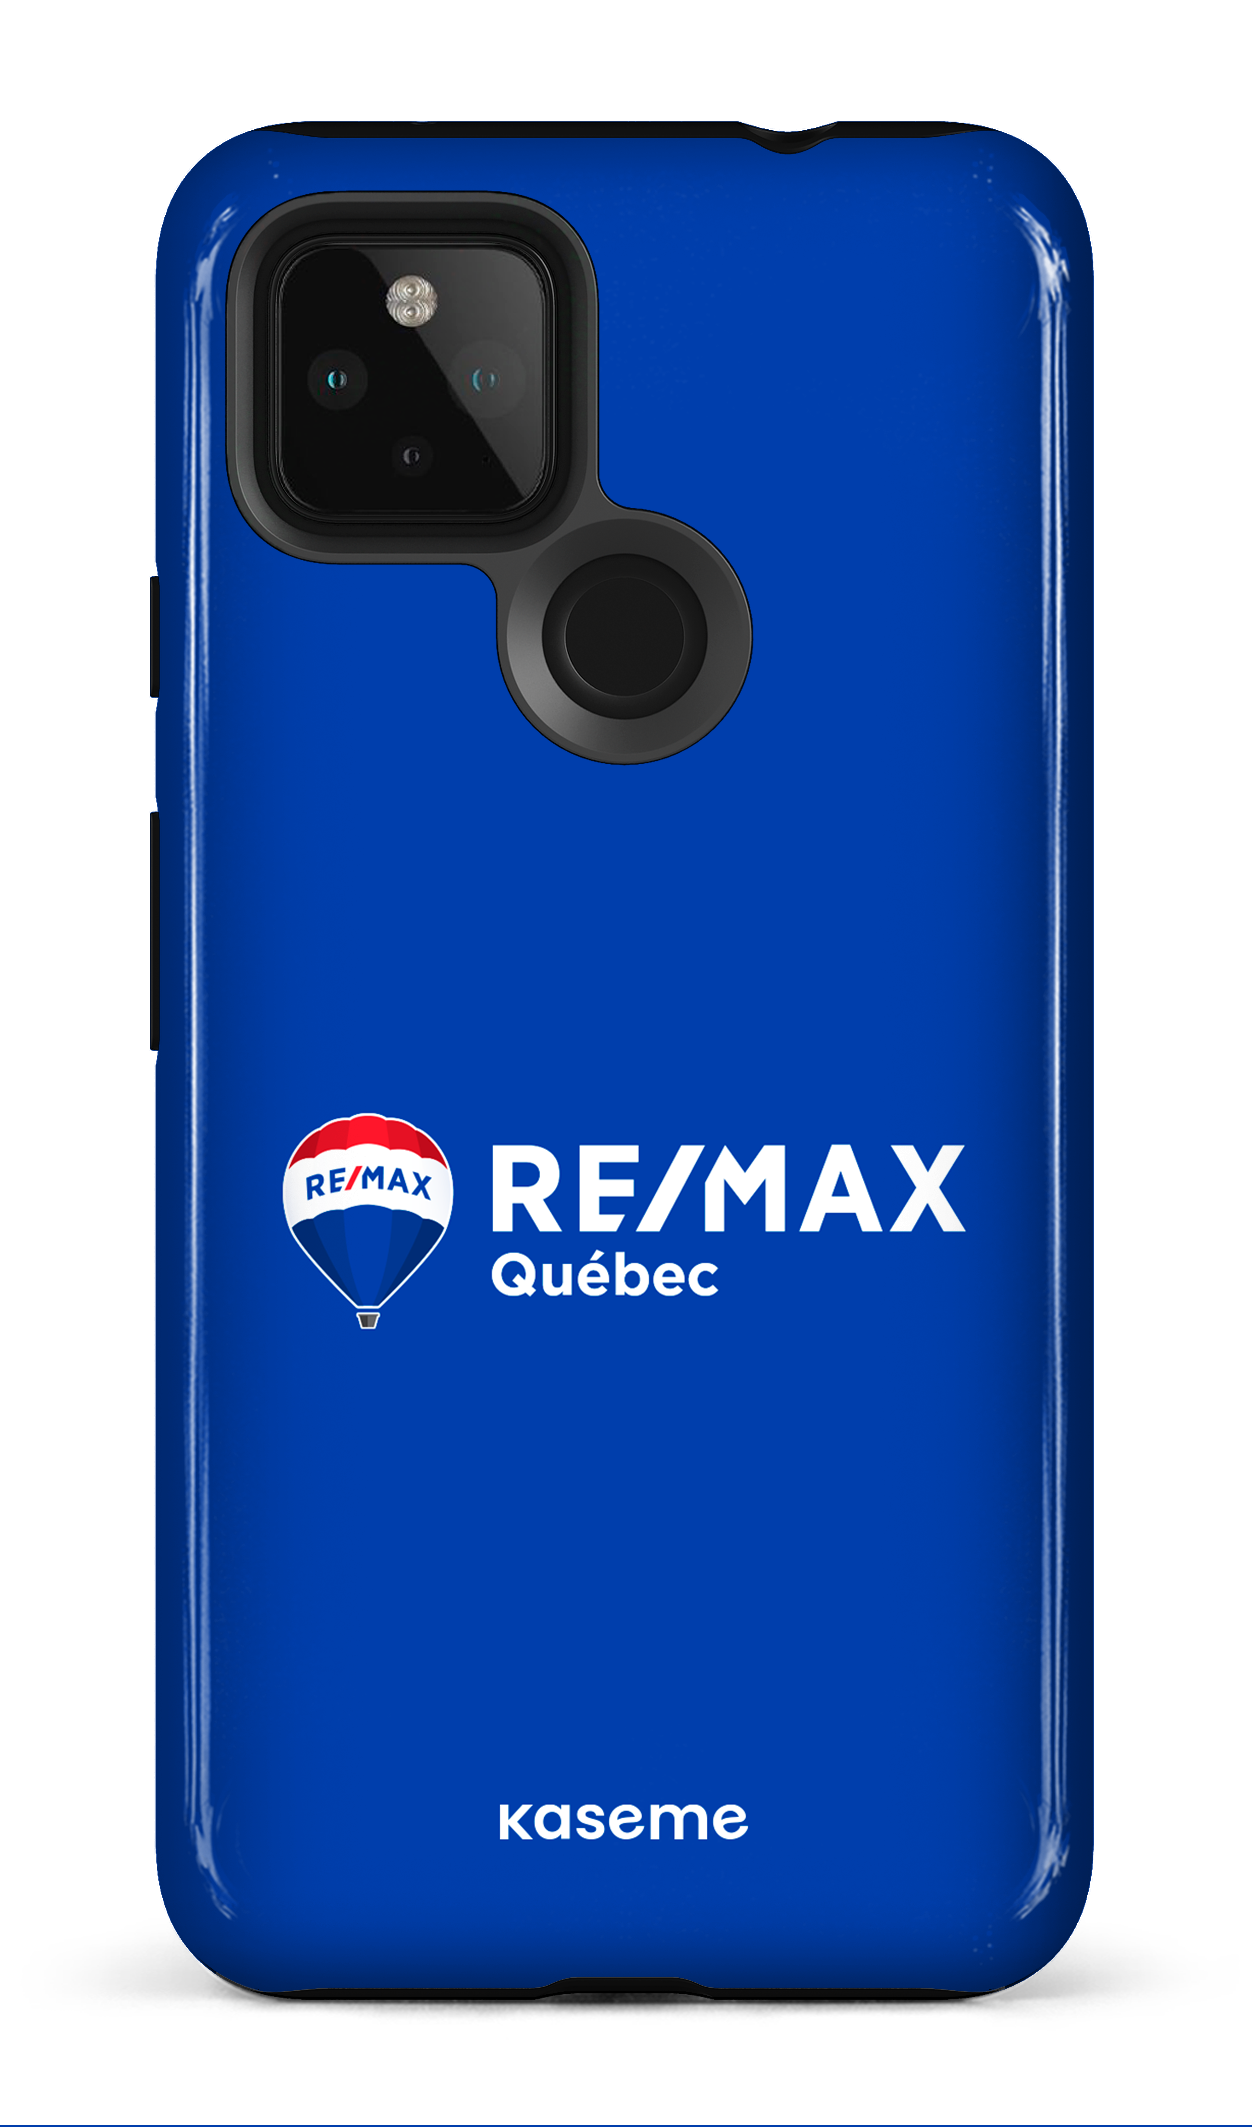 Remax Québec Bleu - Google Pixel 4A (5G)